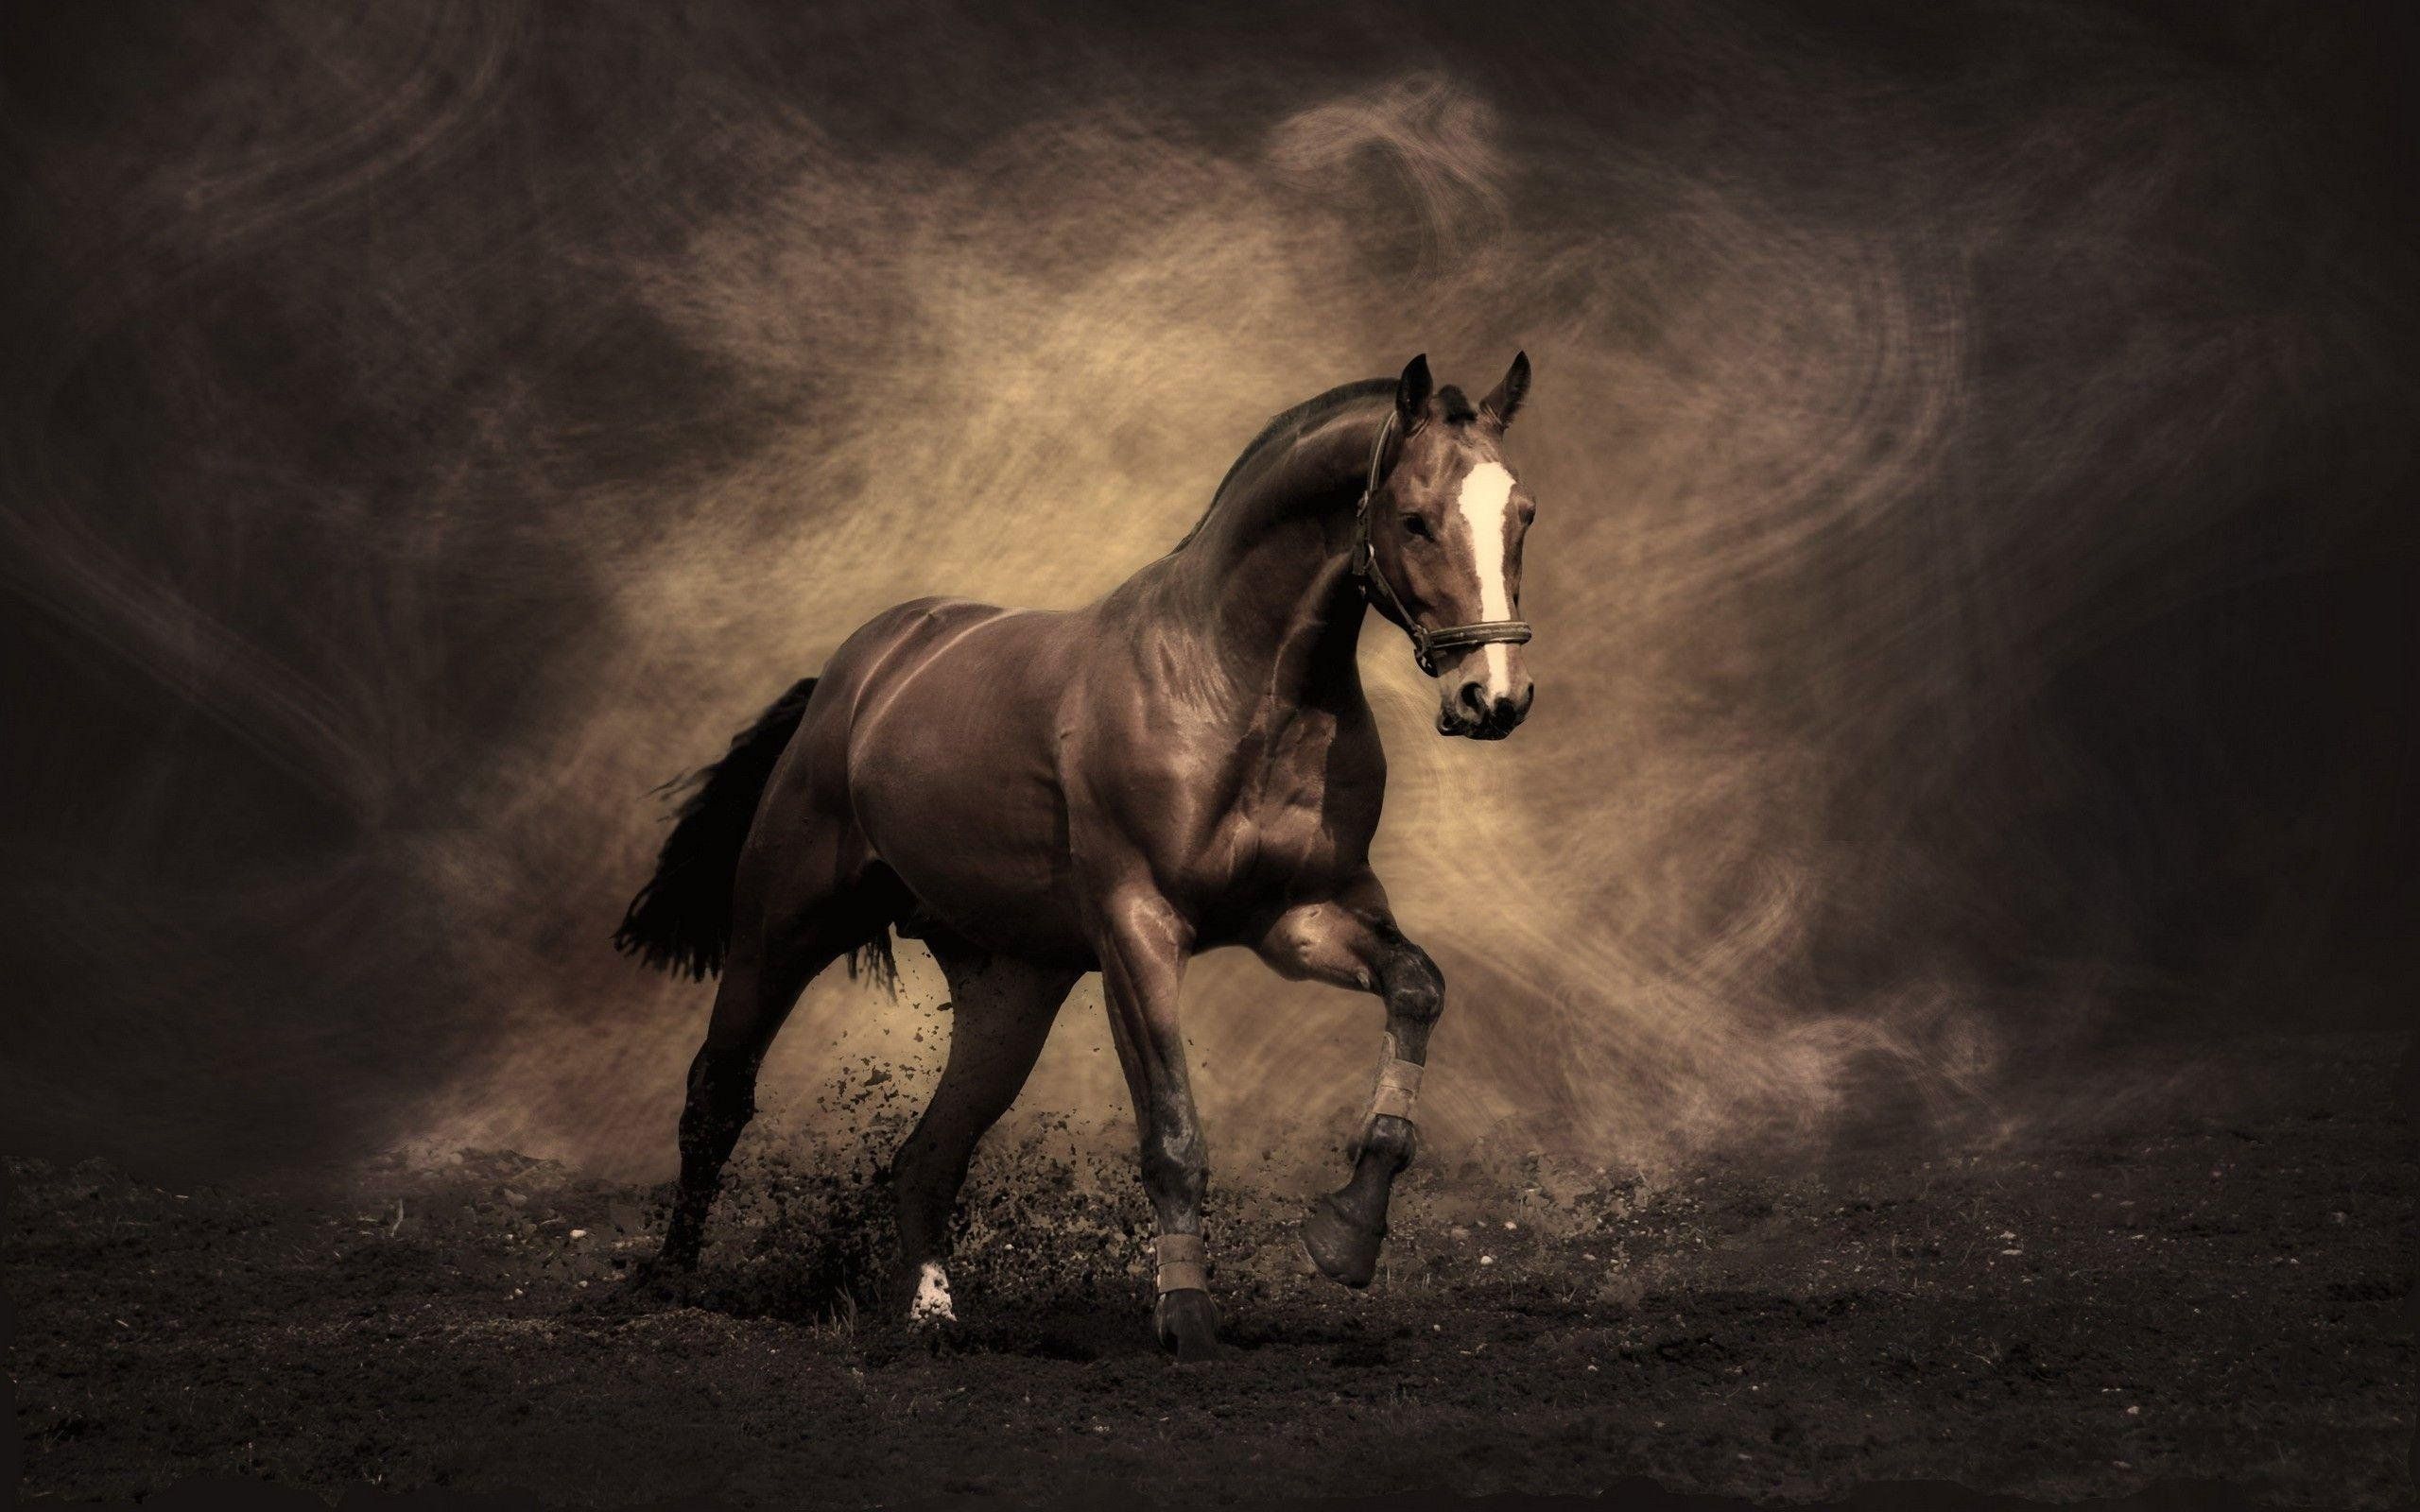 Wallpaper HD Horse Download